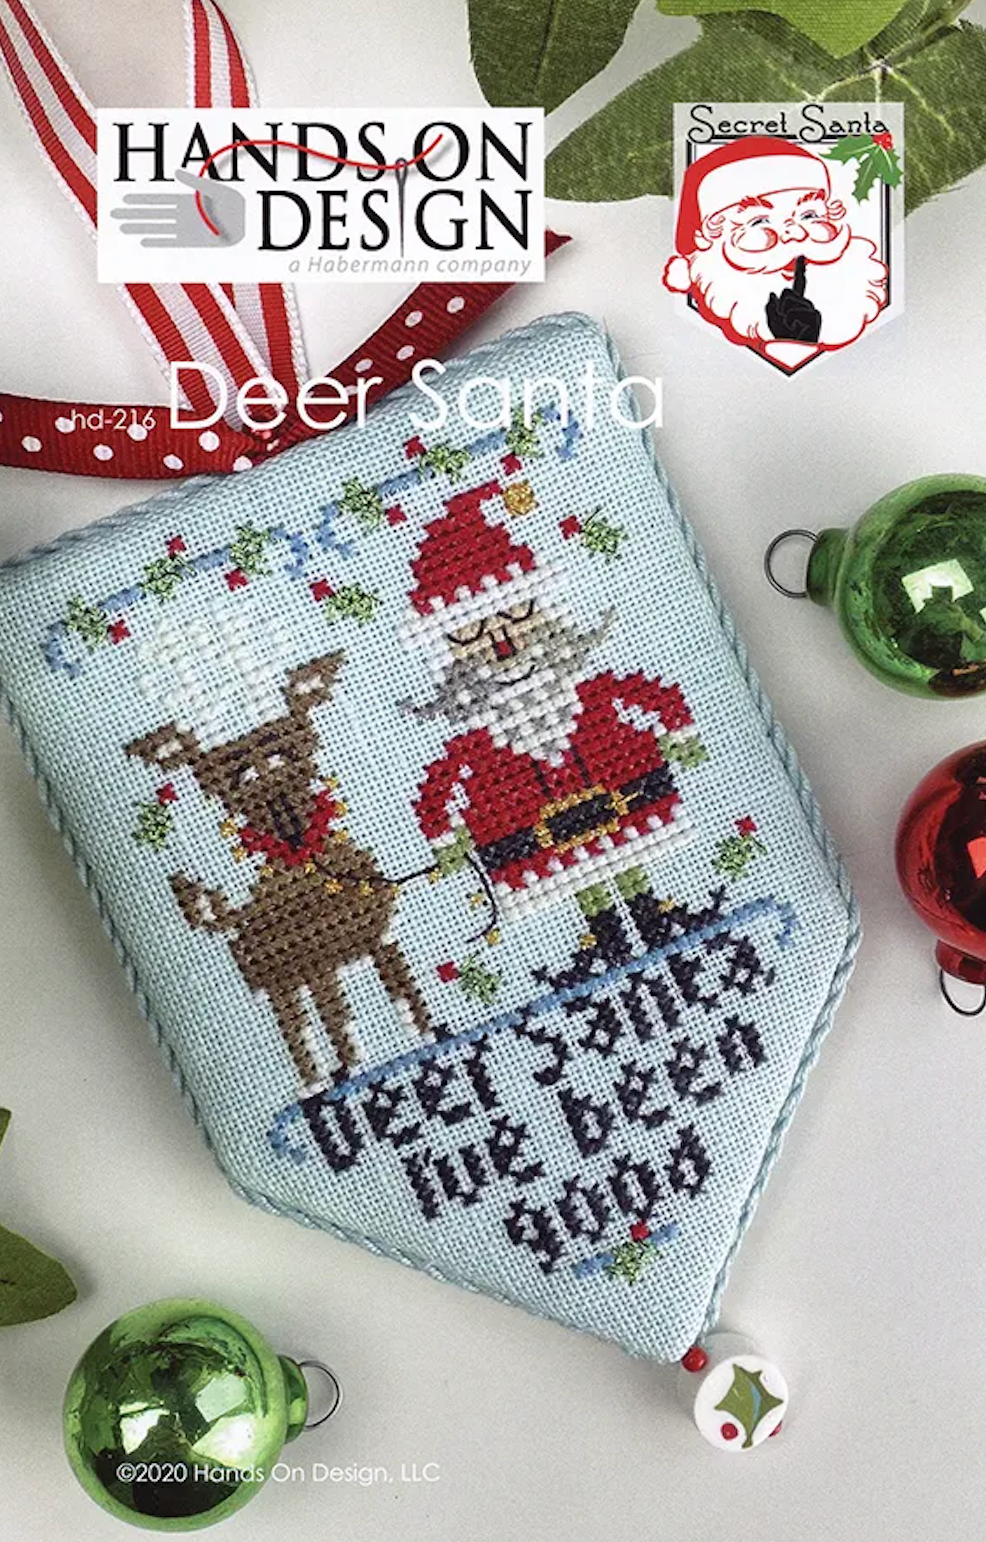 Hands on Design - Secret Santa: Deer Santa